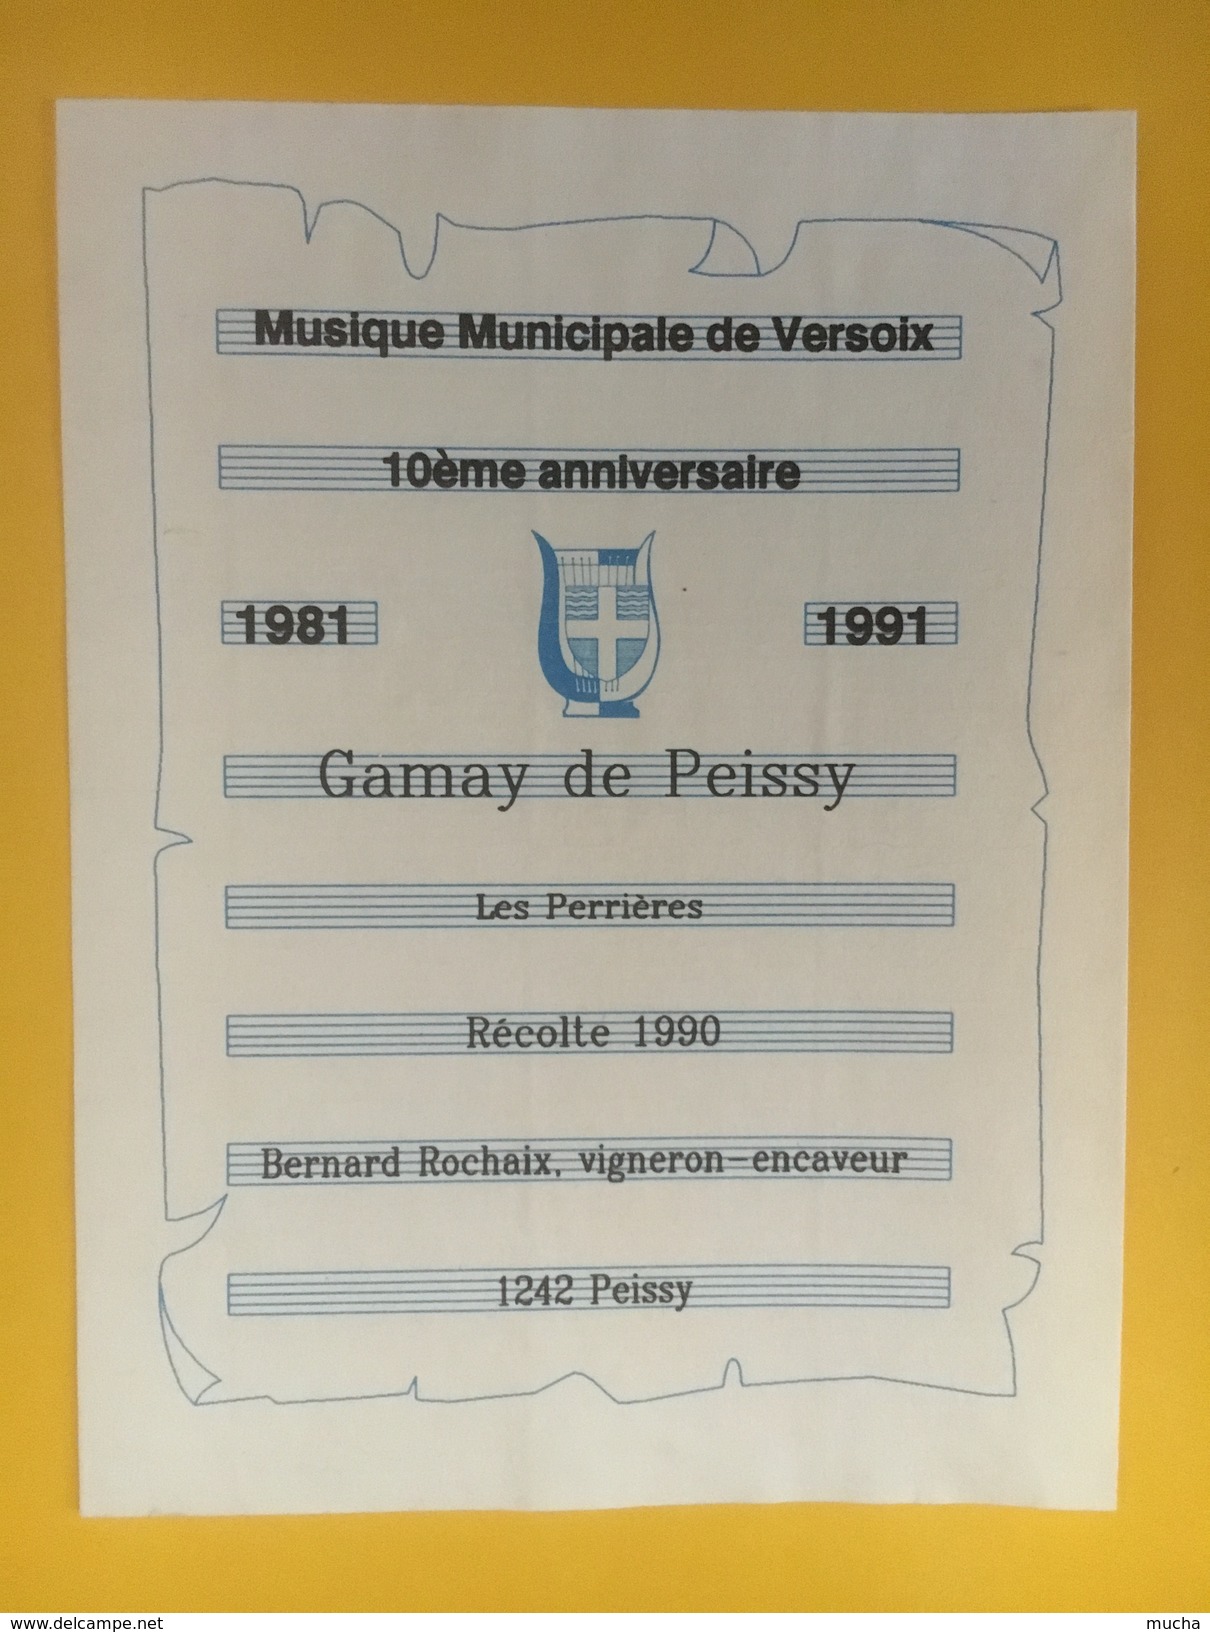 4512 - Musique Municipale De Versoix 10e Anniversaire 1981-1991 Gamay De Peissy - Musique